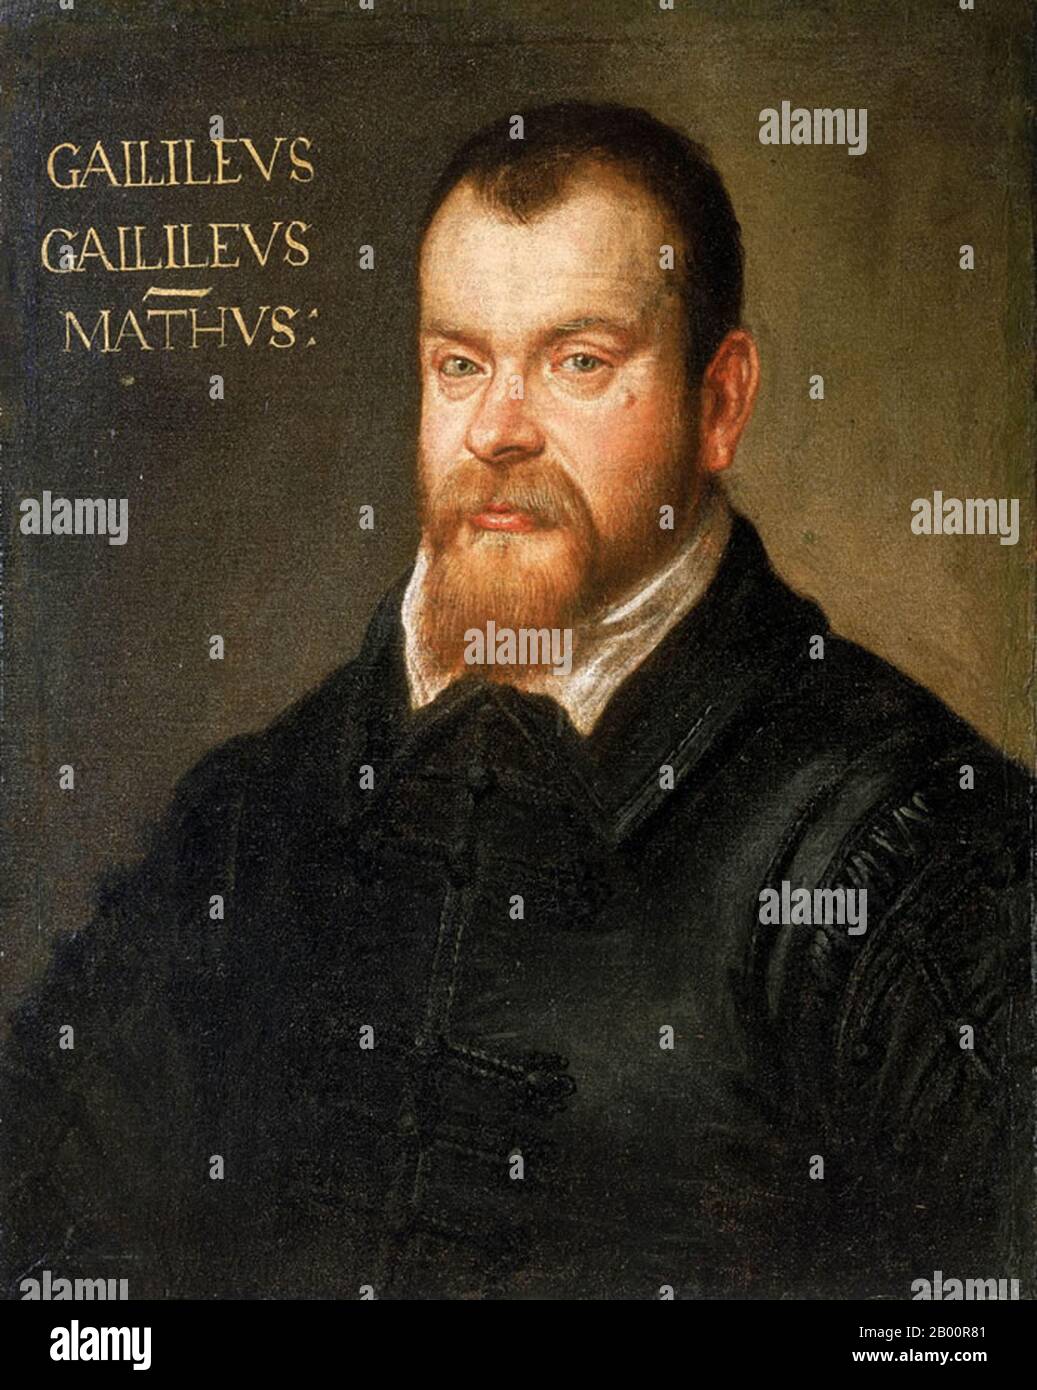 Italia: "Galileo Galilei (1564-1642)". Olio su tela ritratto di Domenico Tintoretto (1560-1635), c. 1602-1607. Galileo Galilei Galileo Galilei (15 febbraio 1564 – 8 gennaio 1642) è stato un fisico, matematico, filosofo e astronomo italiano che ha svolto un ruolo fondamentale nel fondare la scienza moderna in un momento in cui la contraddizione della religione era considerata eresia. Era come astronomo che era più controverso. Galileo sviluppò telescopi che confermavano le fasi di Venere, e la scoperta dei quattro satelliti più grandi di Giove (chiamati in suo onore le lune galileiane), così come dei punti solari. Foto Stock